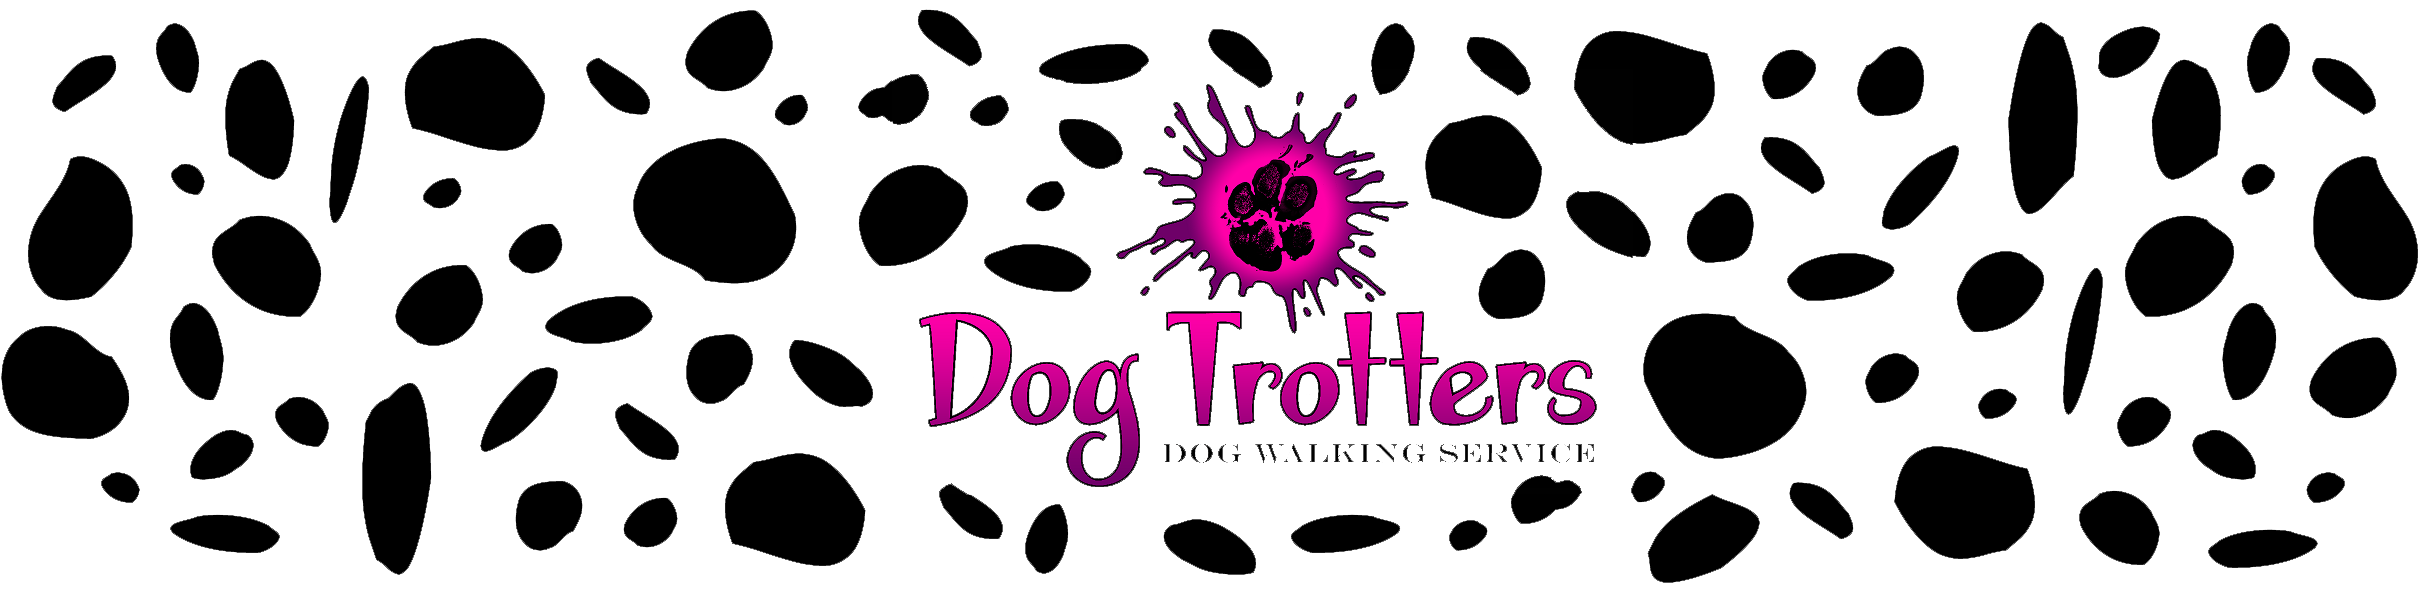 Dog-Trotters Header